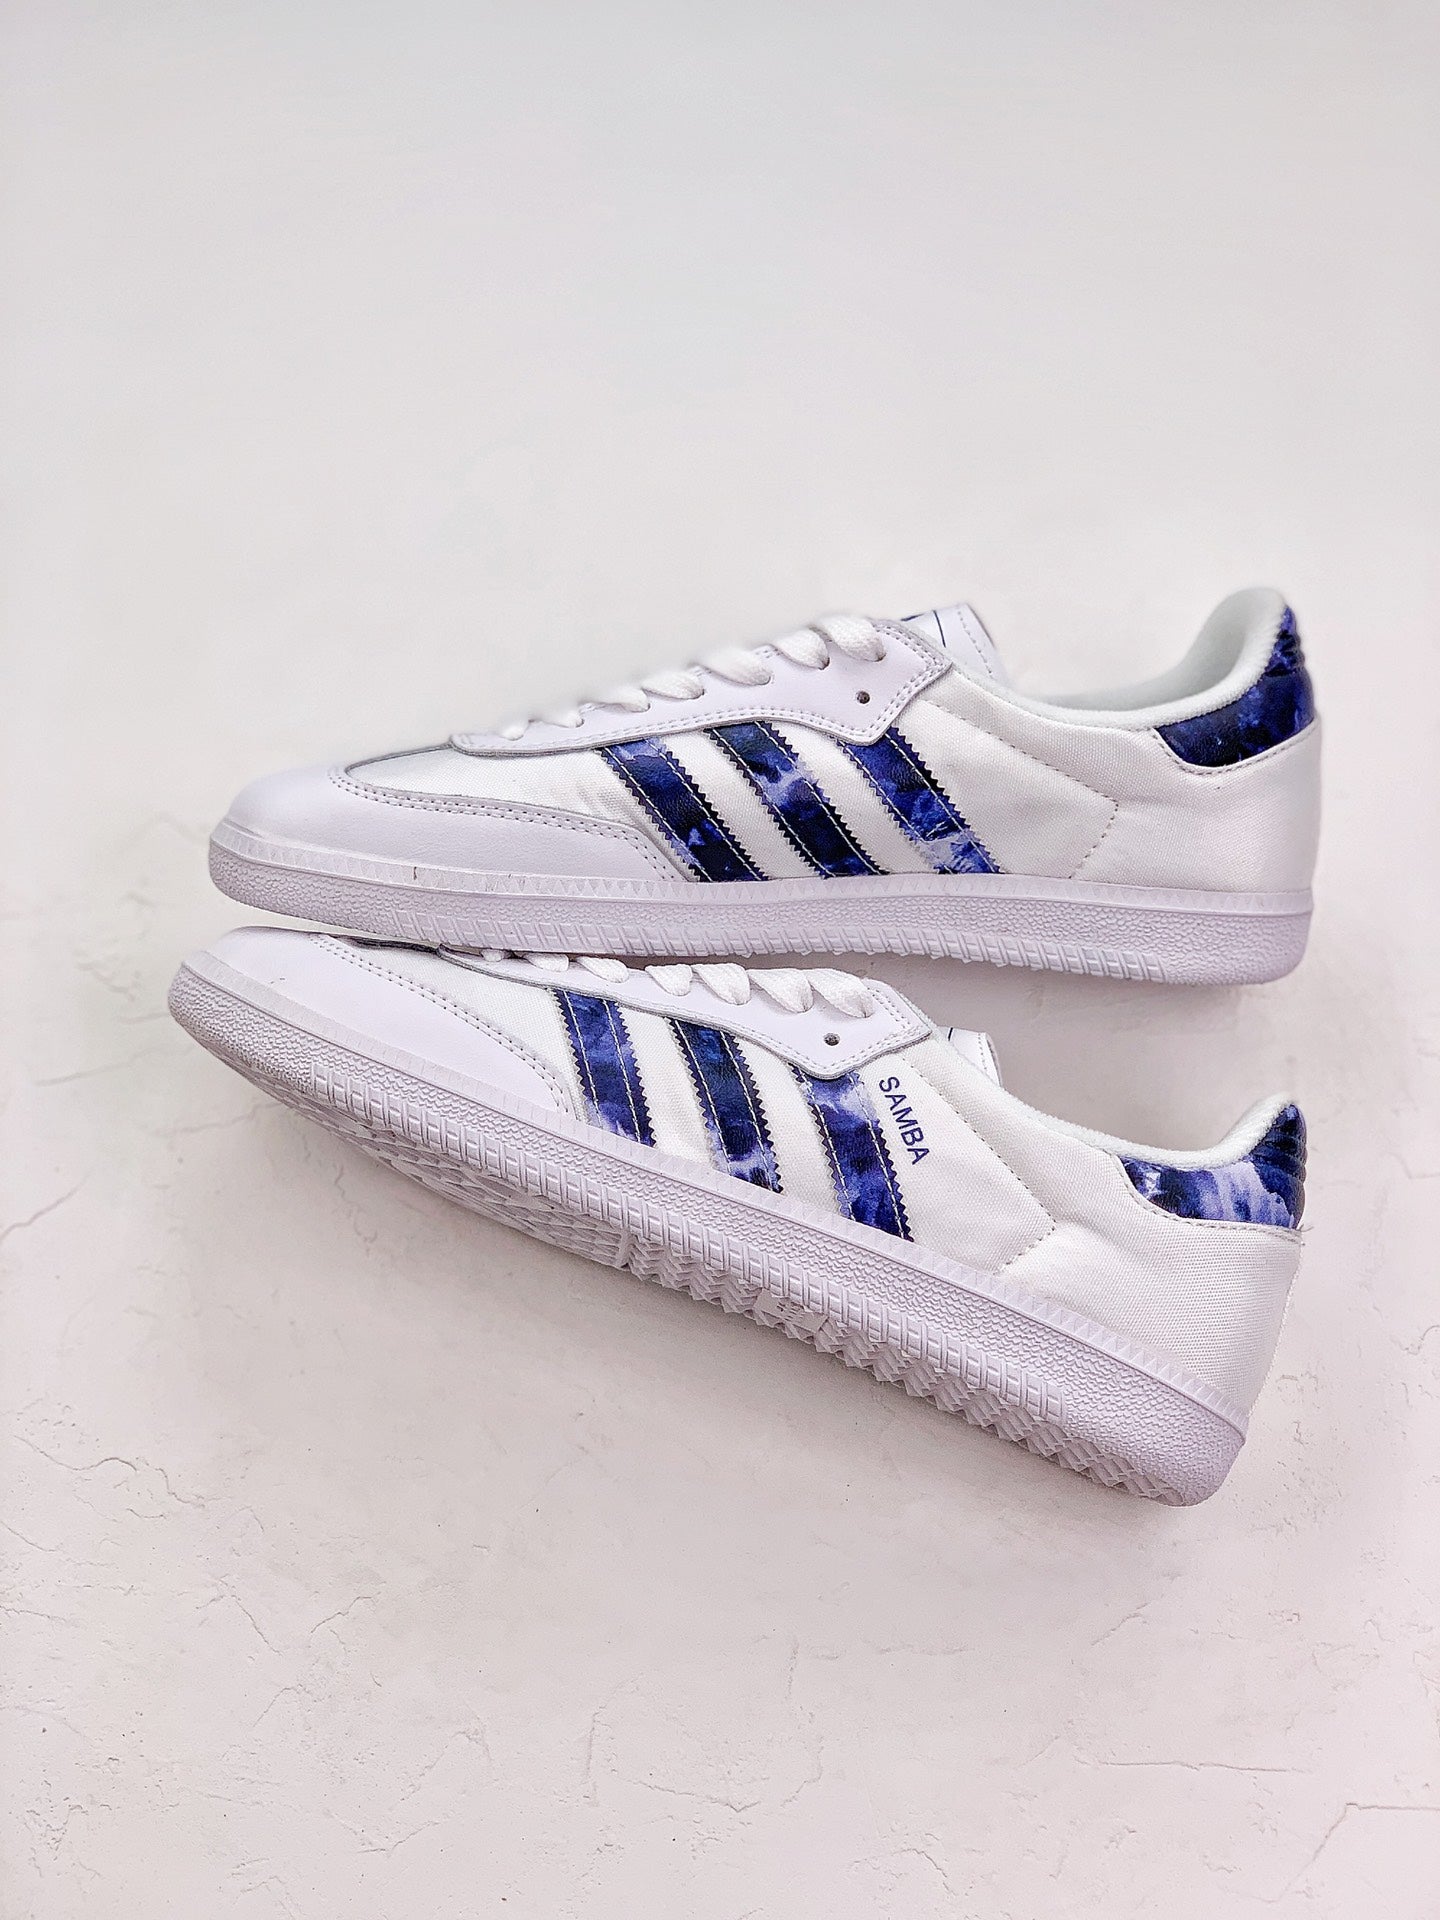 Adidas samba blue shoes